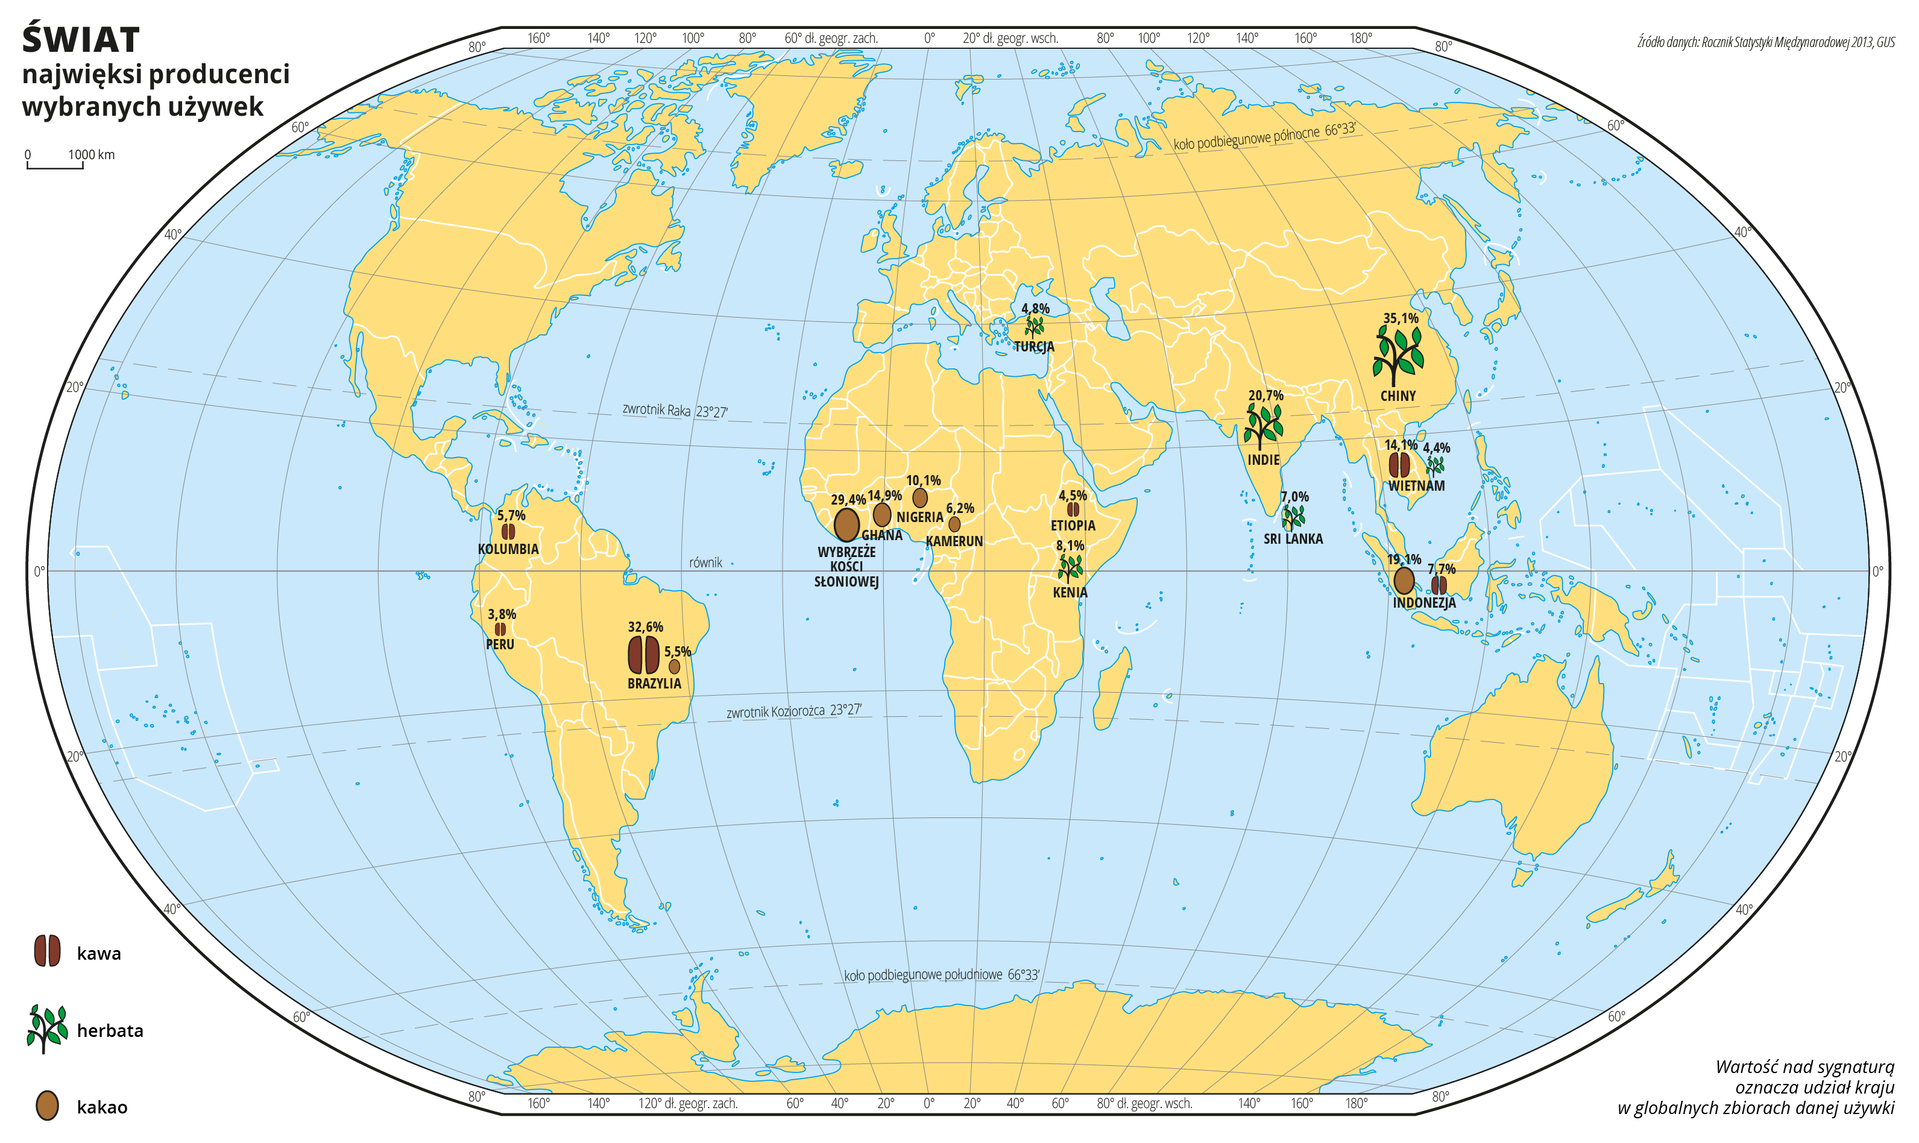 Na ilustracji ukazano mapę świata. Wody zaznaczono kolorem niebieskim. Na mapie za pomocą sygnatur zaznaczono największych producentów używek: kawy, herbaty i kakao. Nad sygnaturami zapisano liczbę oznaczającą udział kraju w globalnych zbiorach danej używki. Największa ilość sygnatur znajduje się na obszarach położonych wzdłuż równika i w południowych Indiach i Chinach. Mapa pokryta jest równoleżnikami i południkami. Dookoła mapy w białej ramce opisano współrzędne geograficzne co dwadzieścia stopni. Po lewej stronie mapy opisano znaki użyte na mapie.